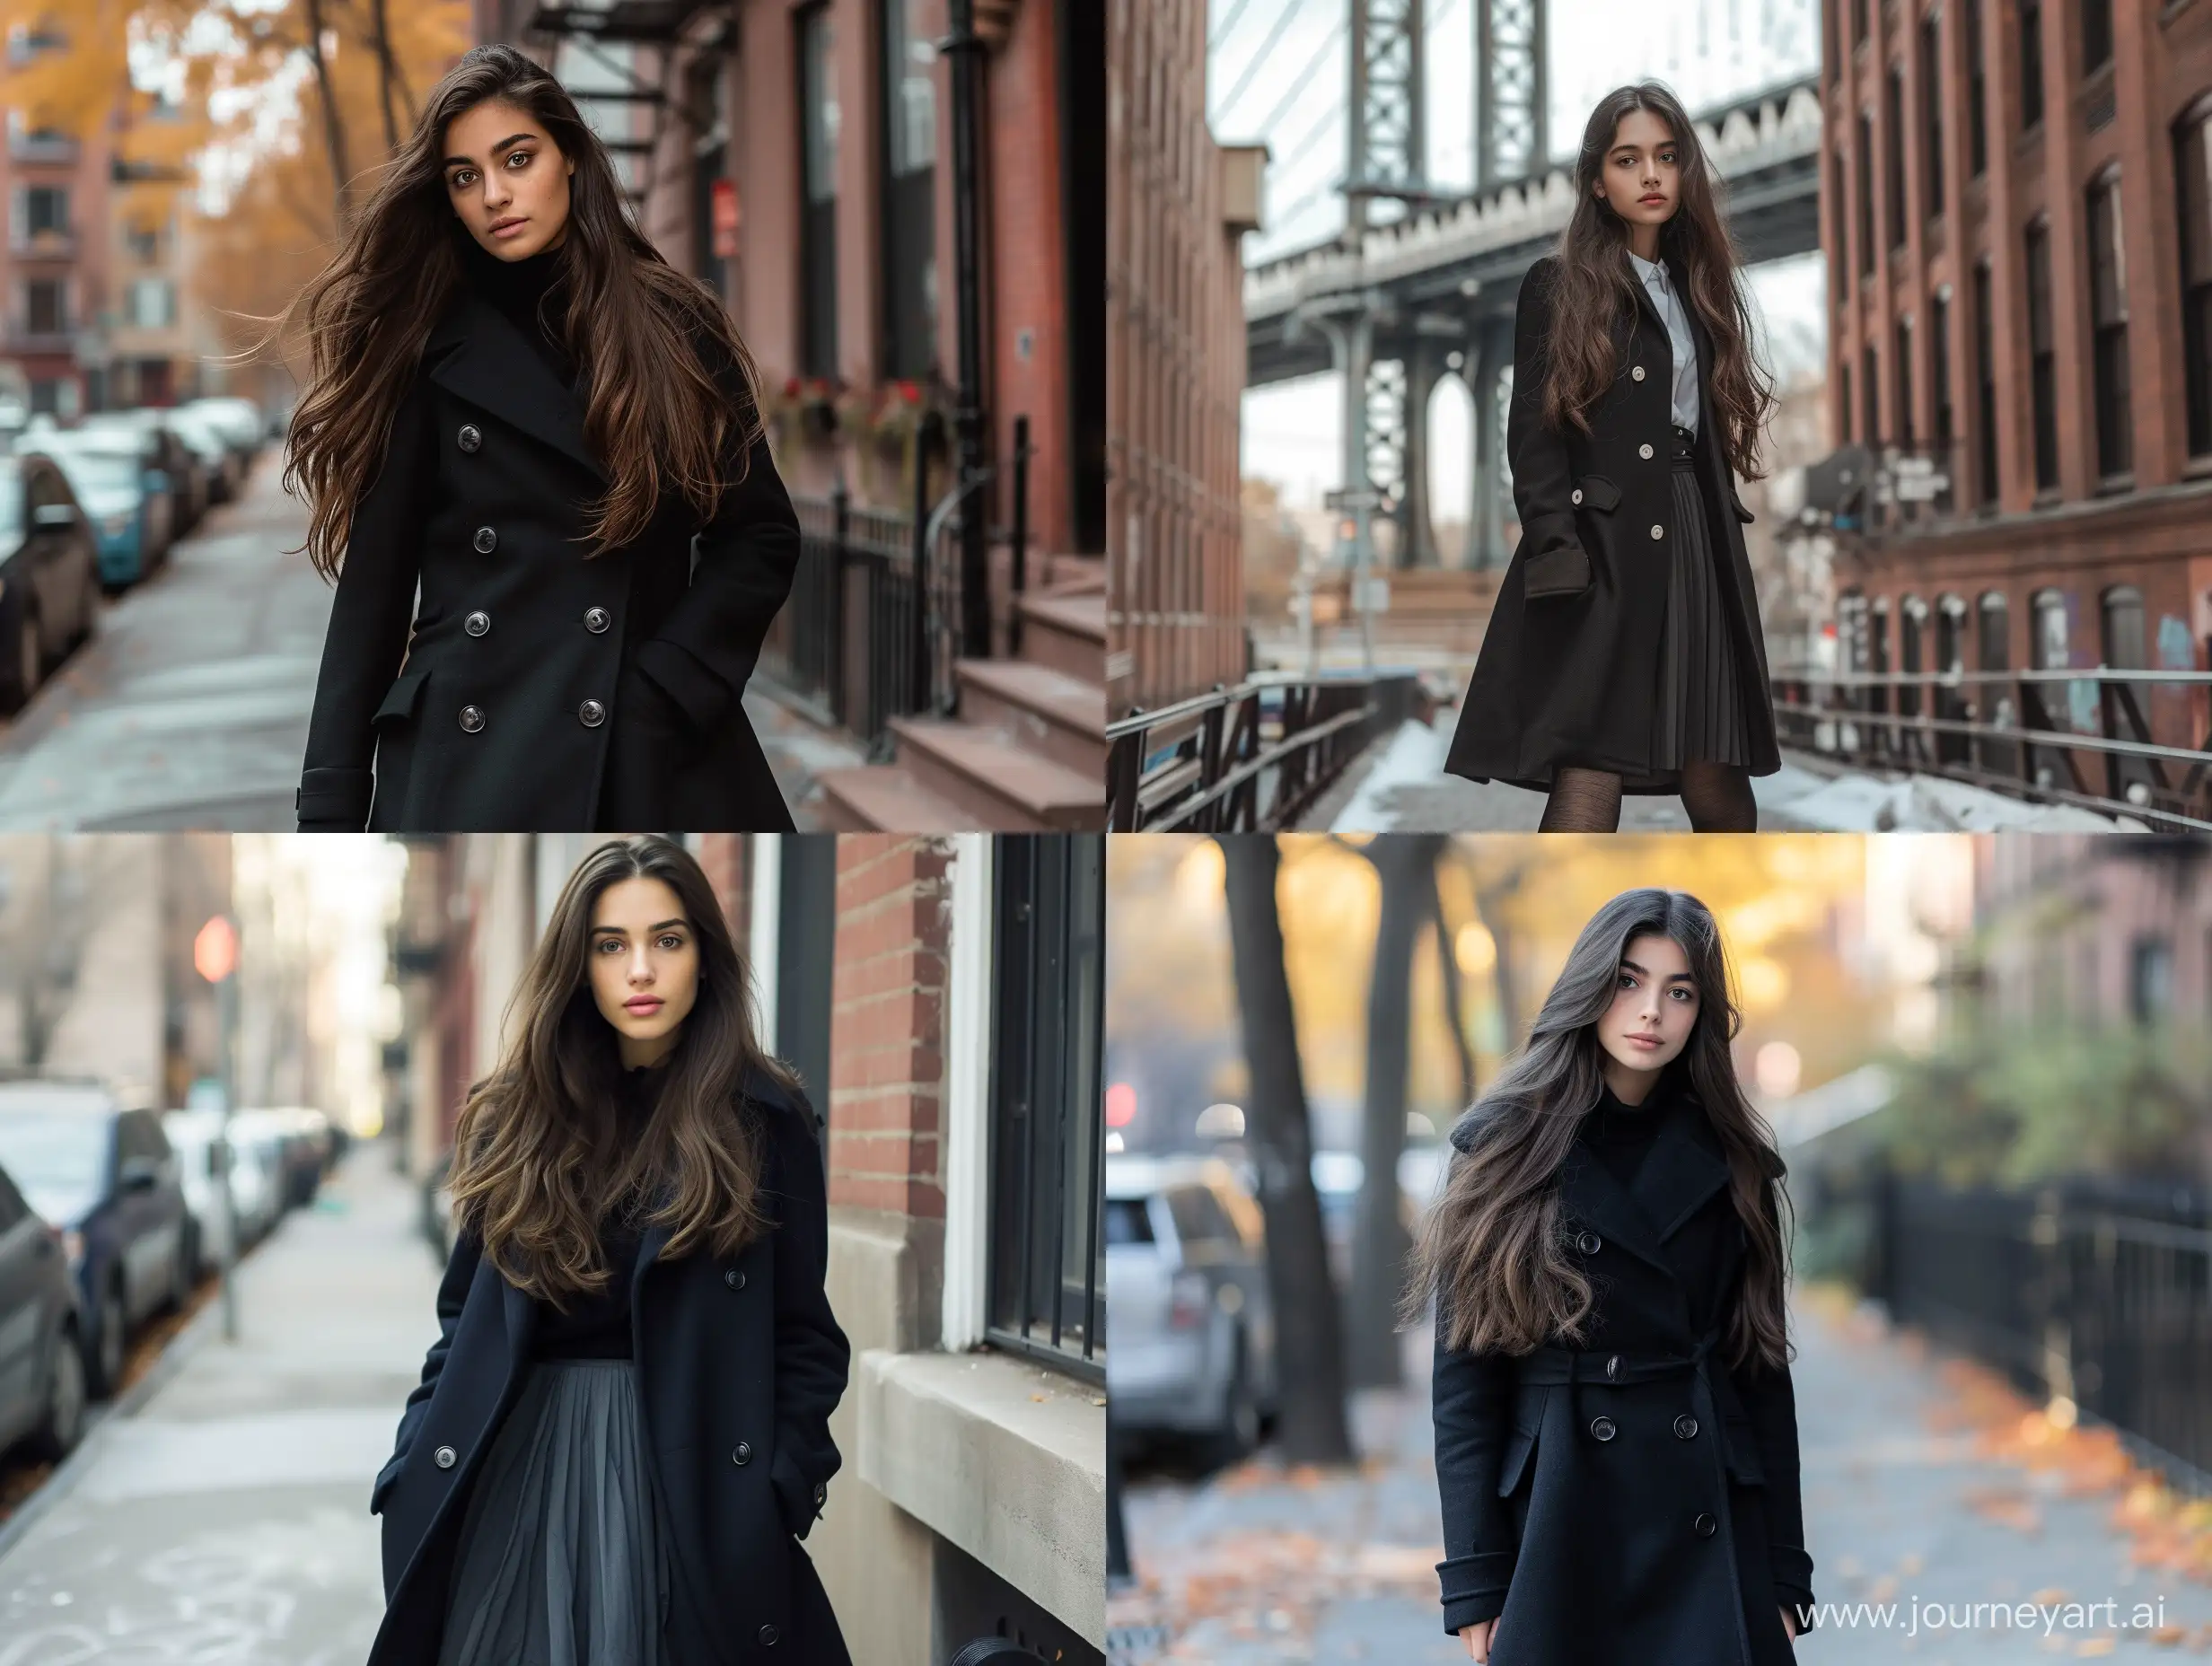 Stylish-Brunette-Woman-in-New-York-Wearing-Elegant-Black-Coat-and-Skirt